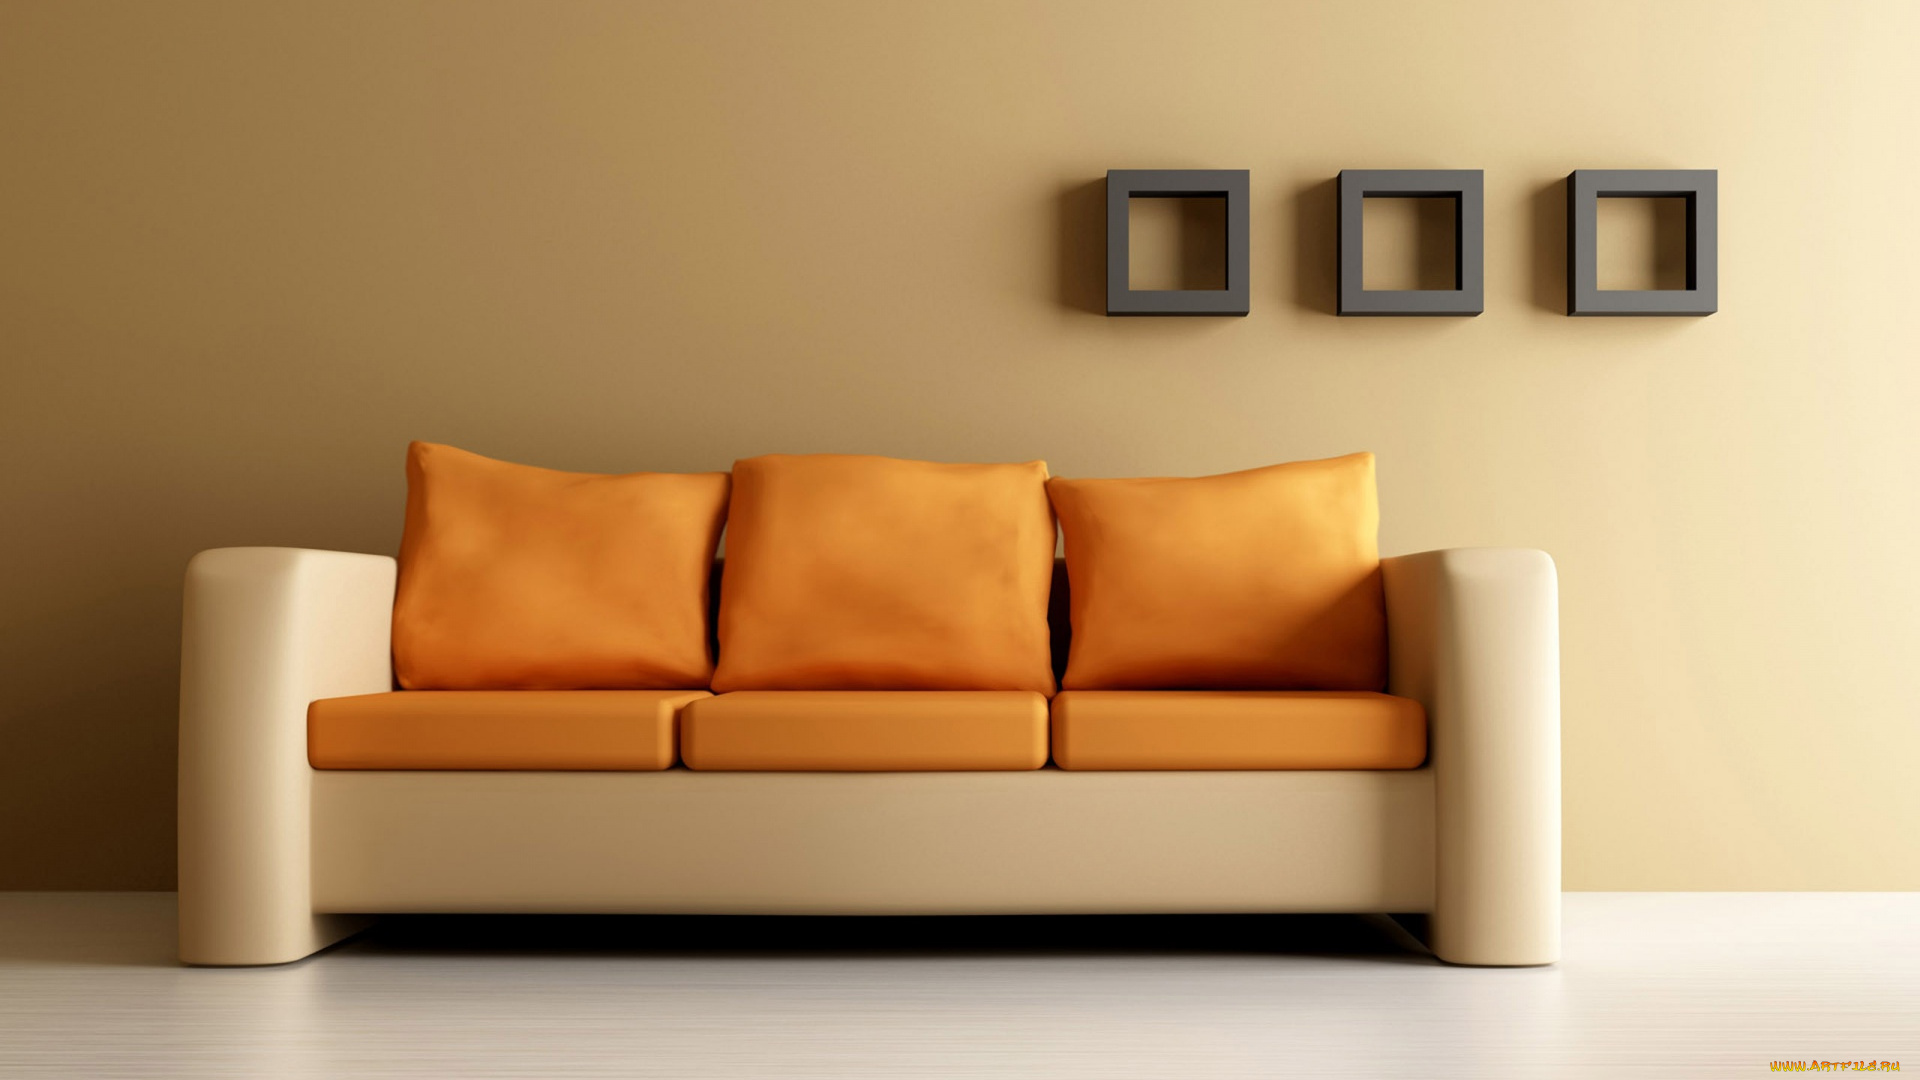 3д, графика, realism, реализм, стена, диван